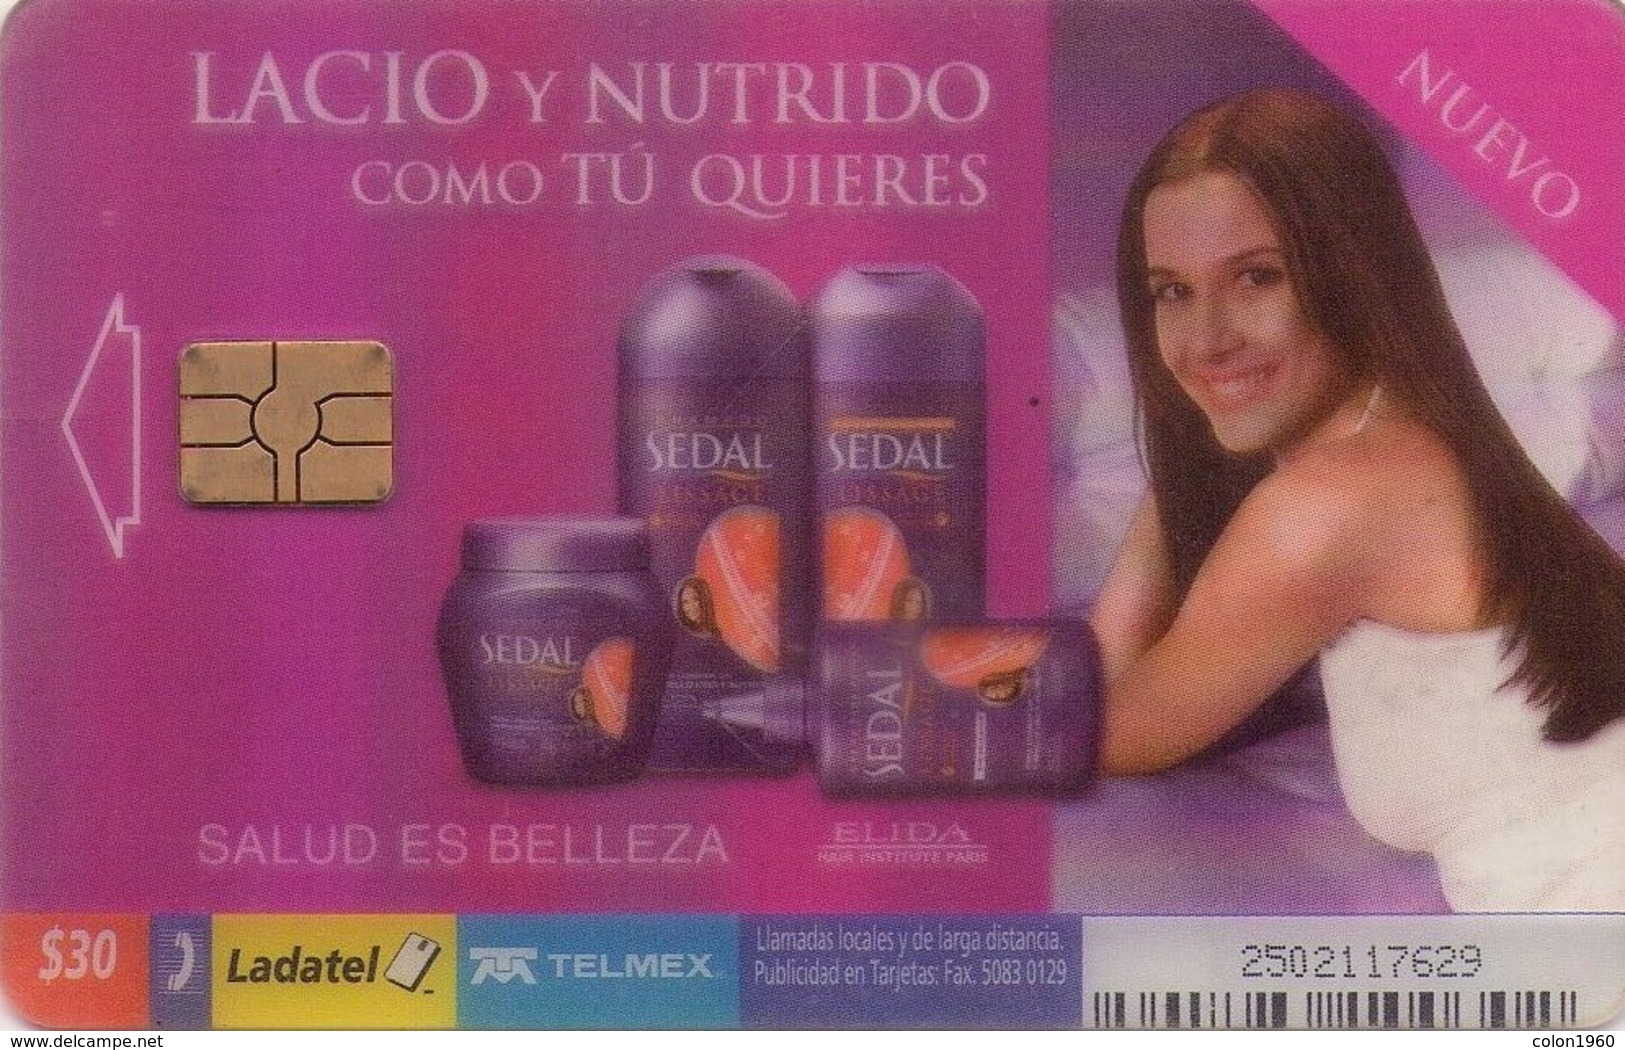 MEXICO. (TRANSPARENTE) Sedal - Lacio Y Nutrido Como Tu Quieres. 2003-04. MX-TEL-P-1112. (036). - México